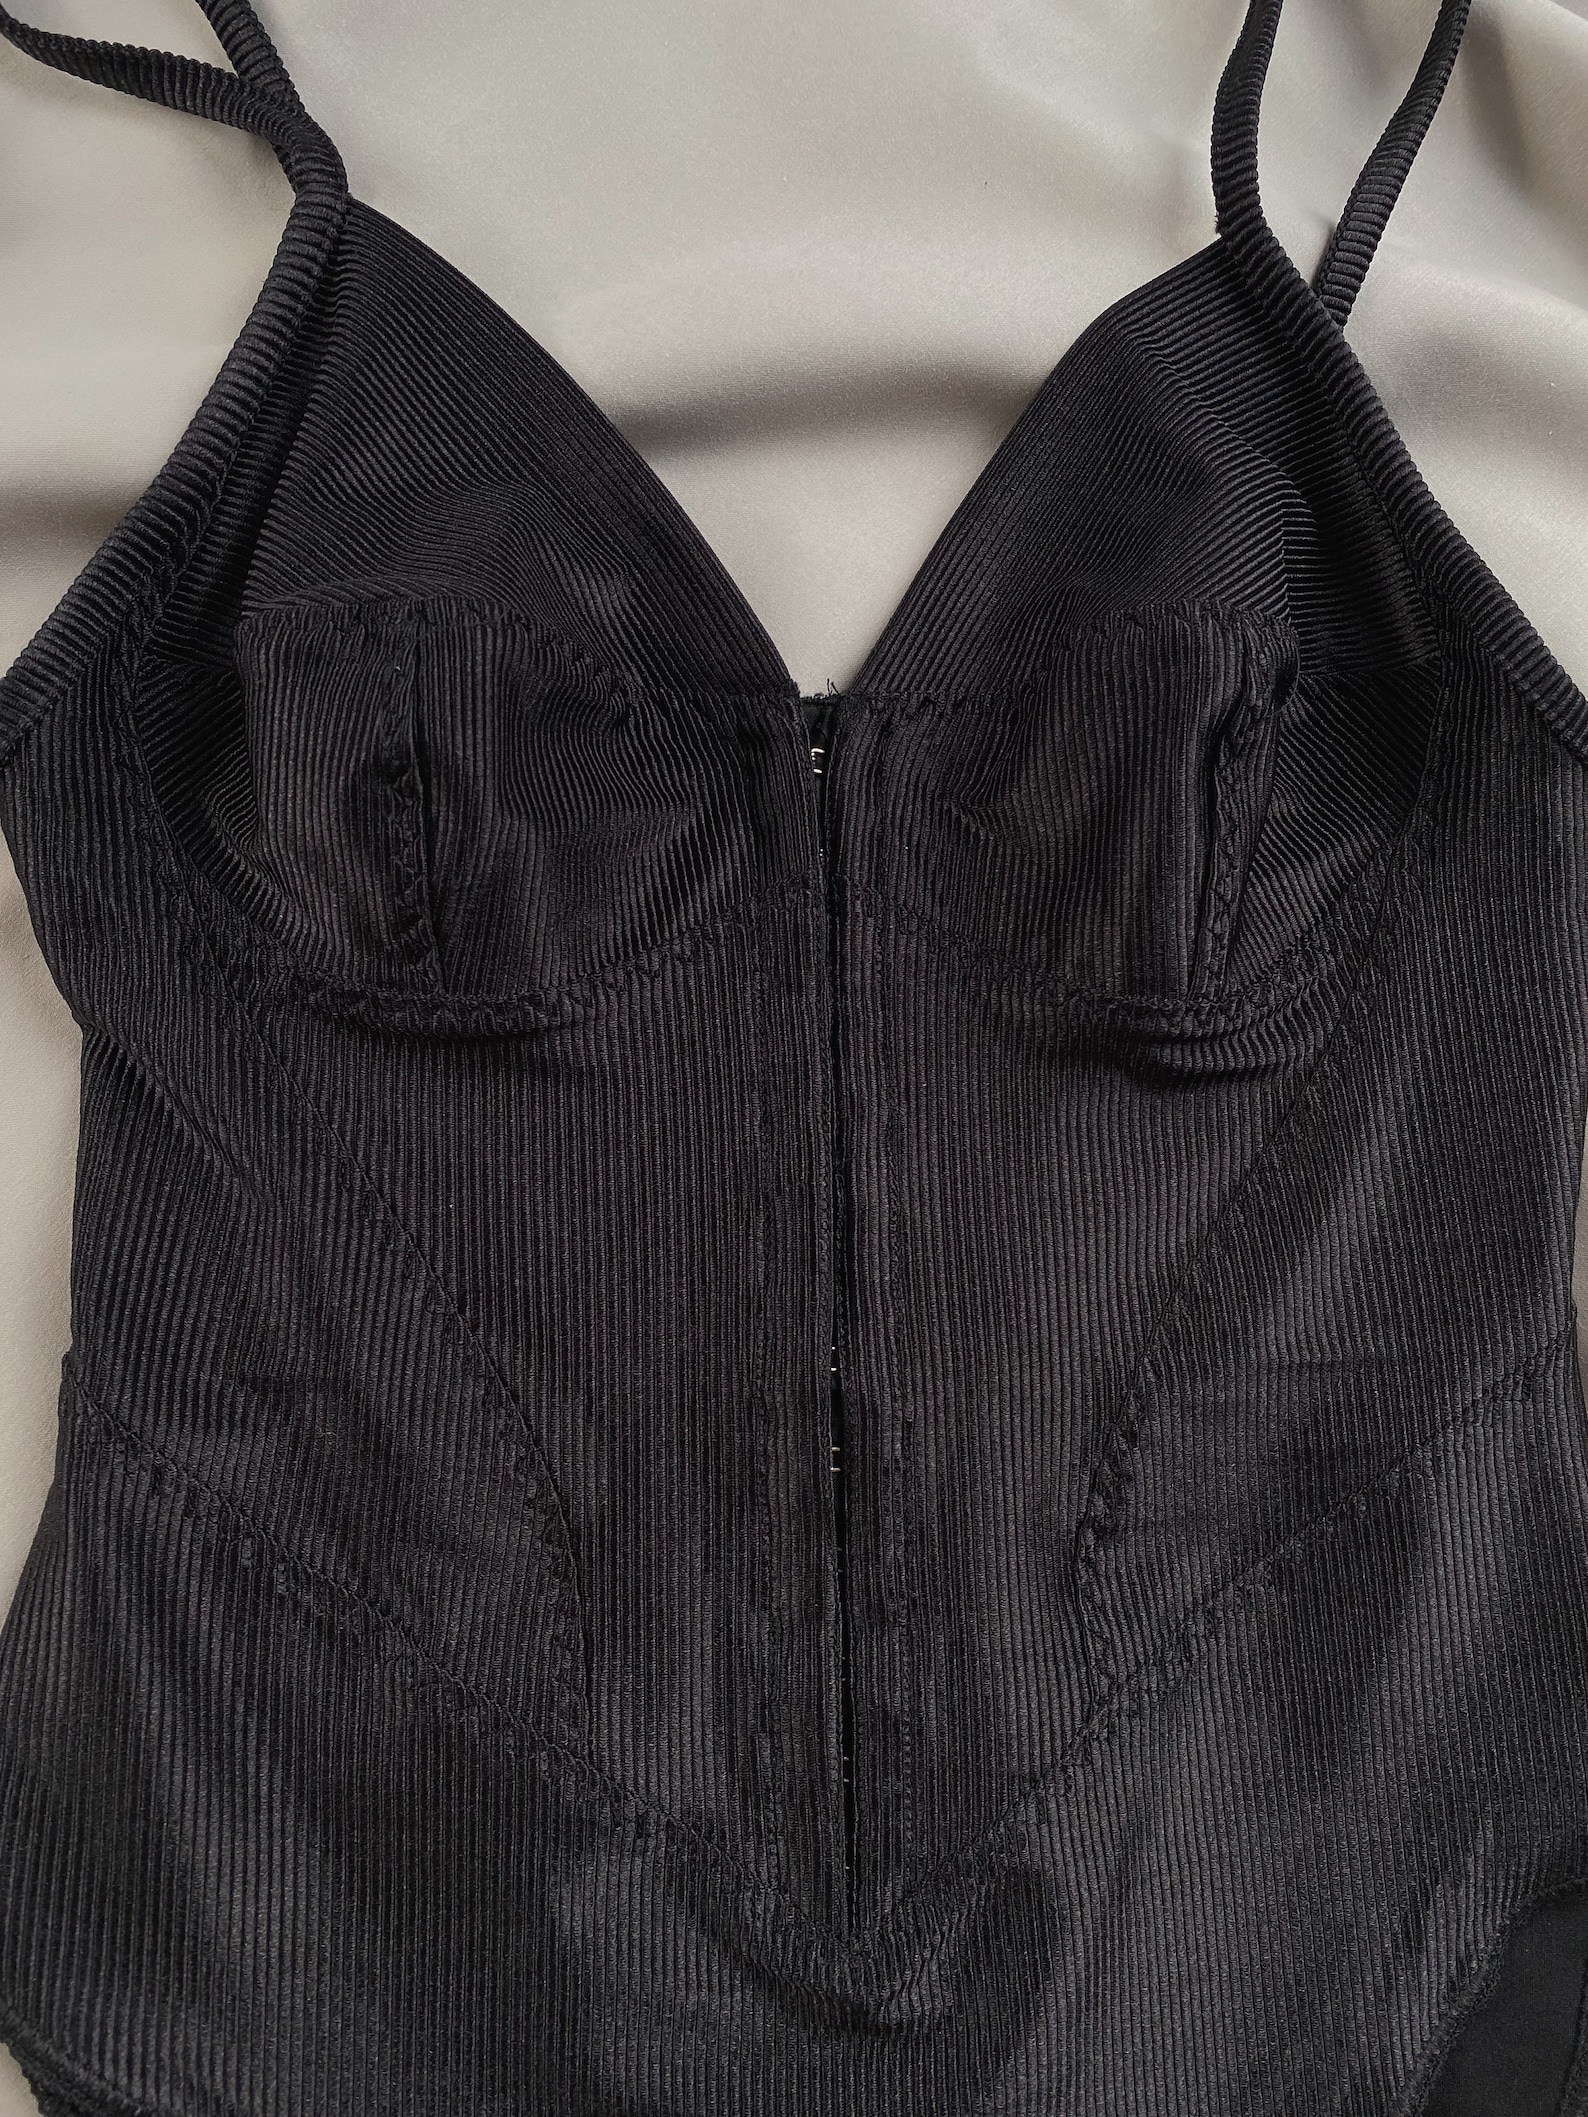 Malizia by LA PERLA XS-M 80s vintage lingerie bodysuit 80s La | Etsy